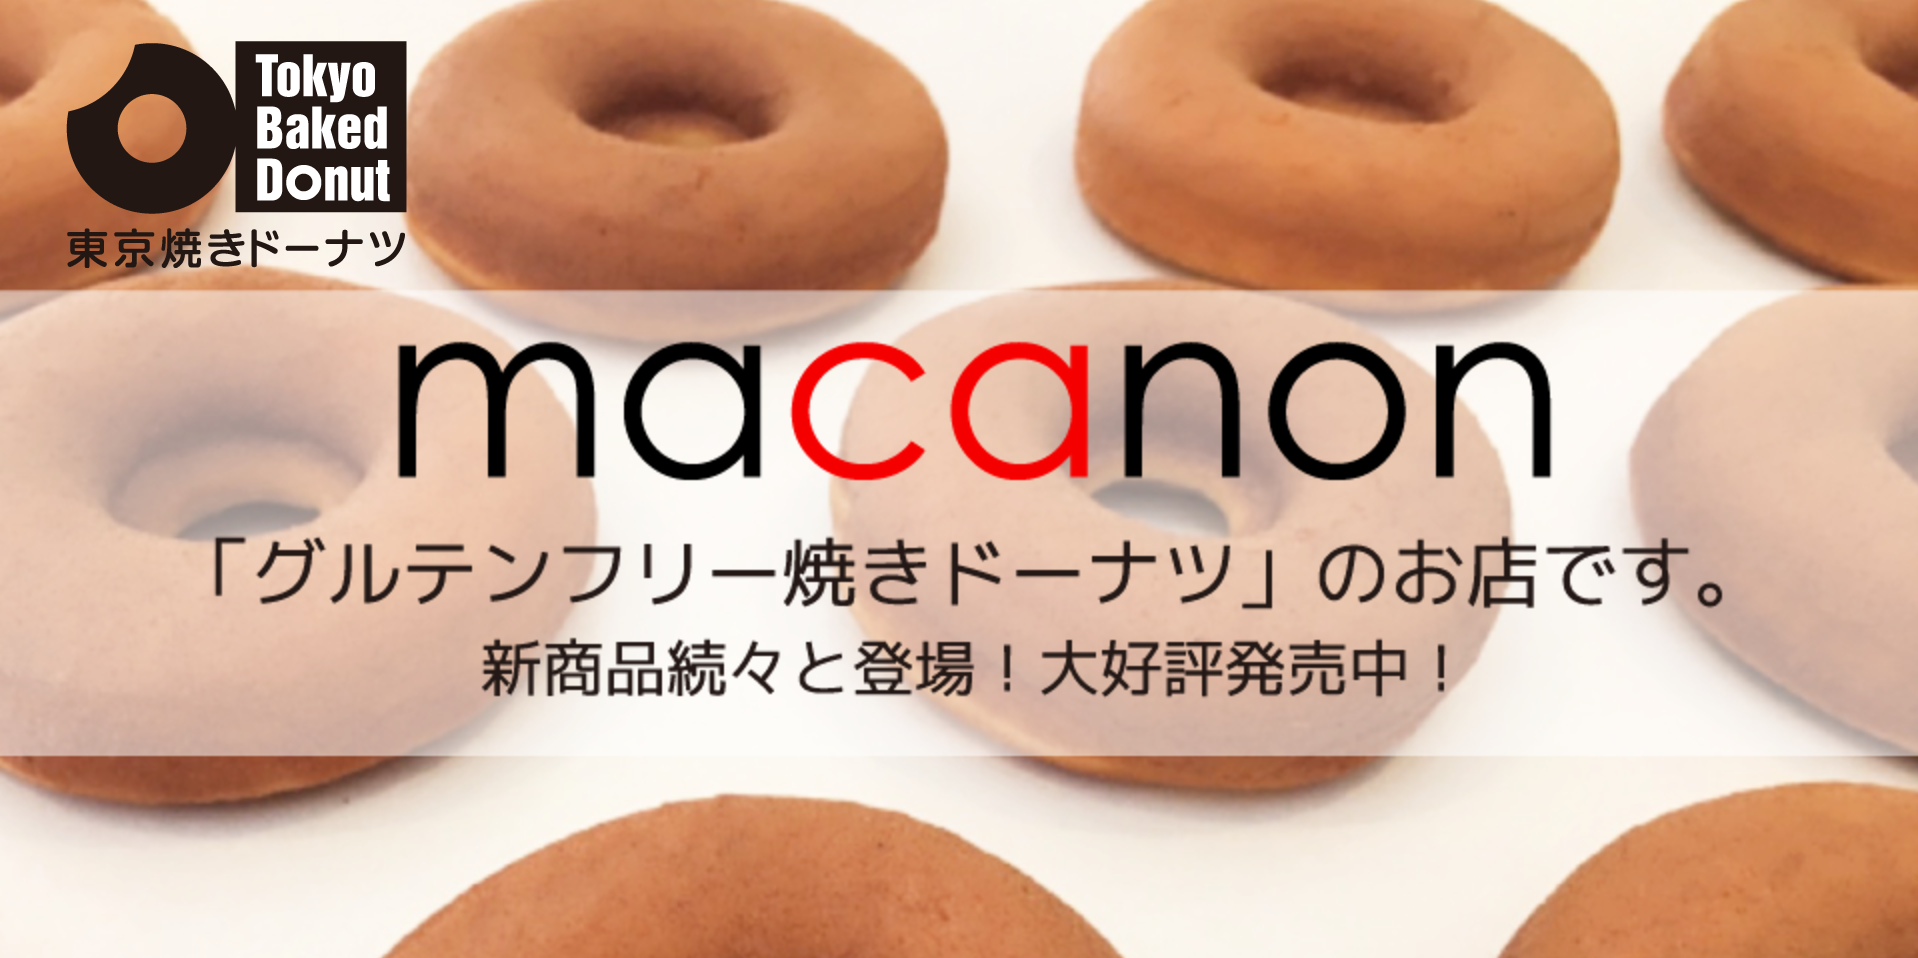 グルテンフリーの焼きドーナツ『macanon』